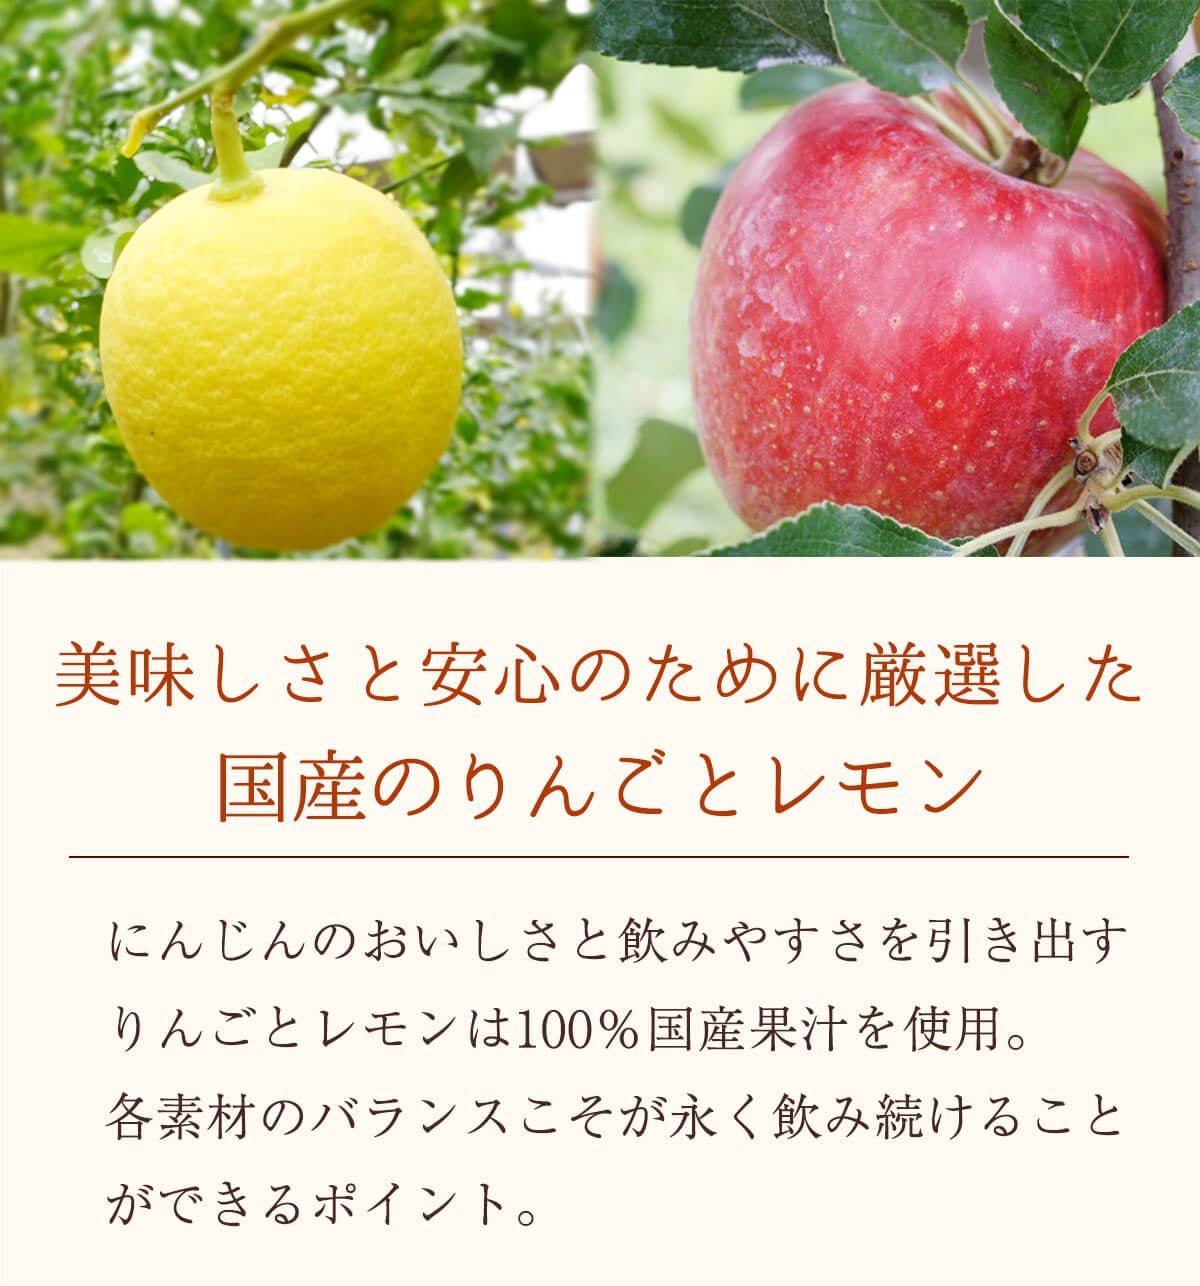 国産のりんごとレモン